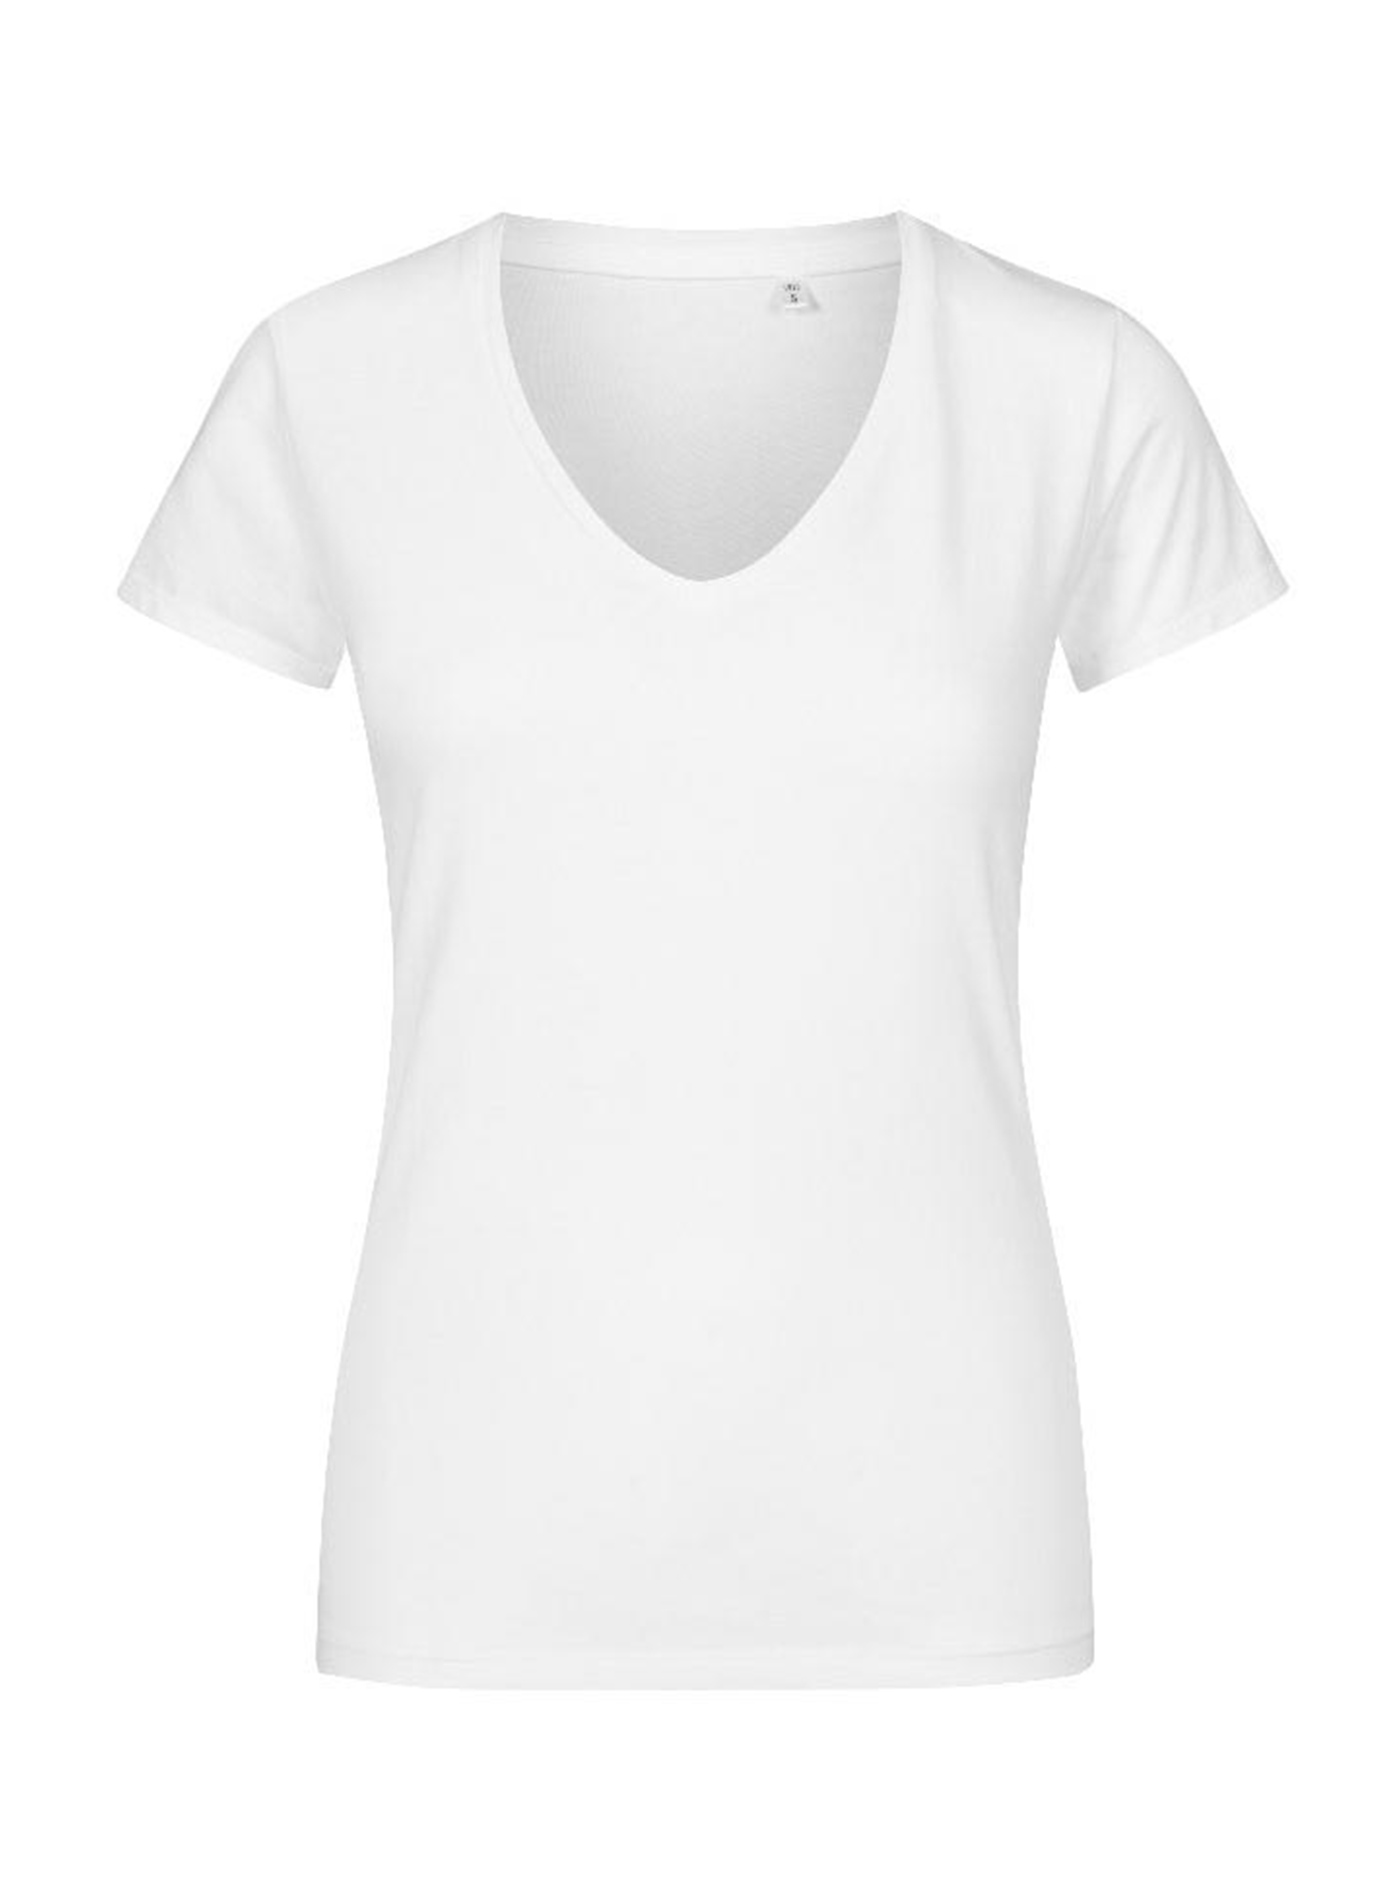 Dámské tričko Promodoro - Bílá S